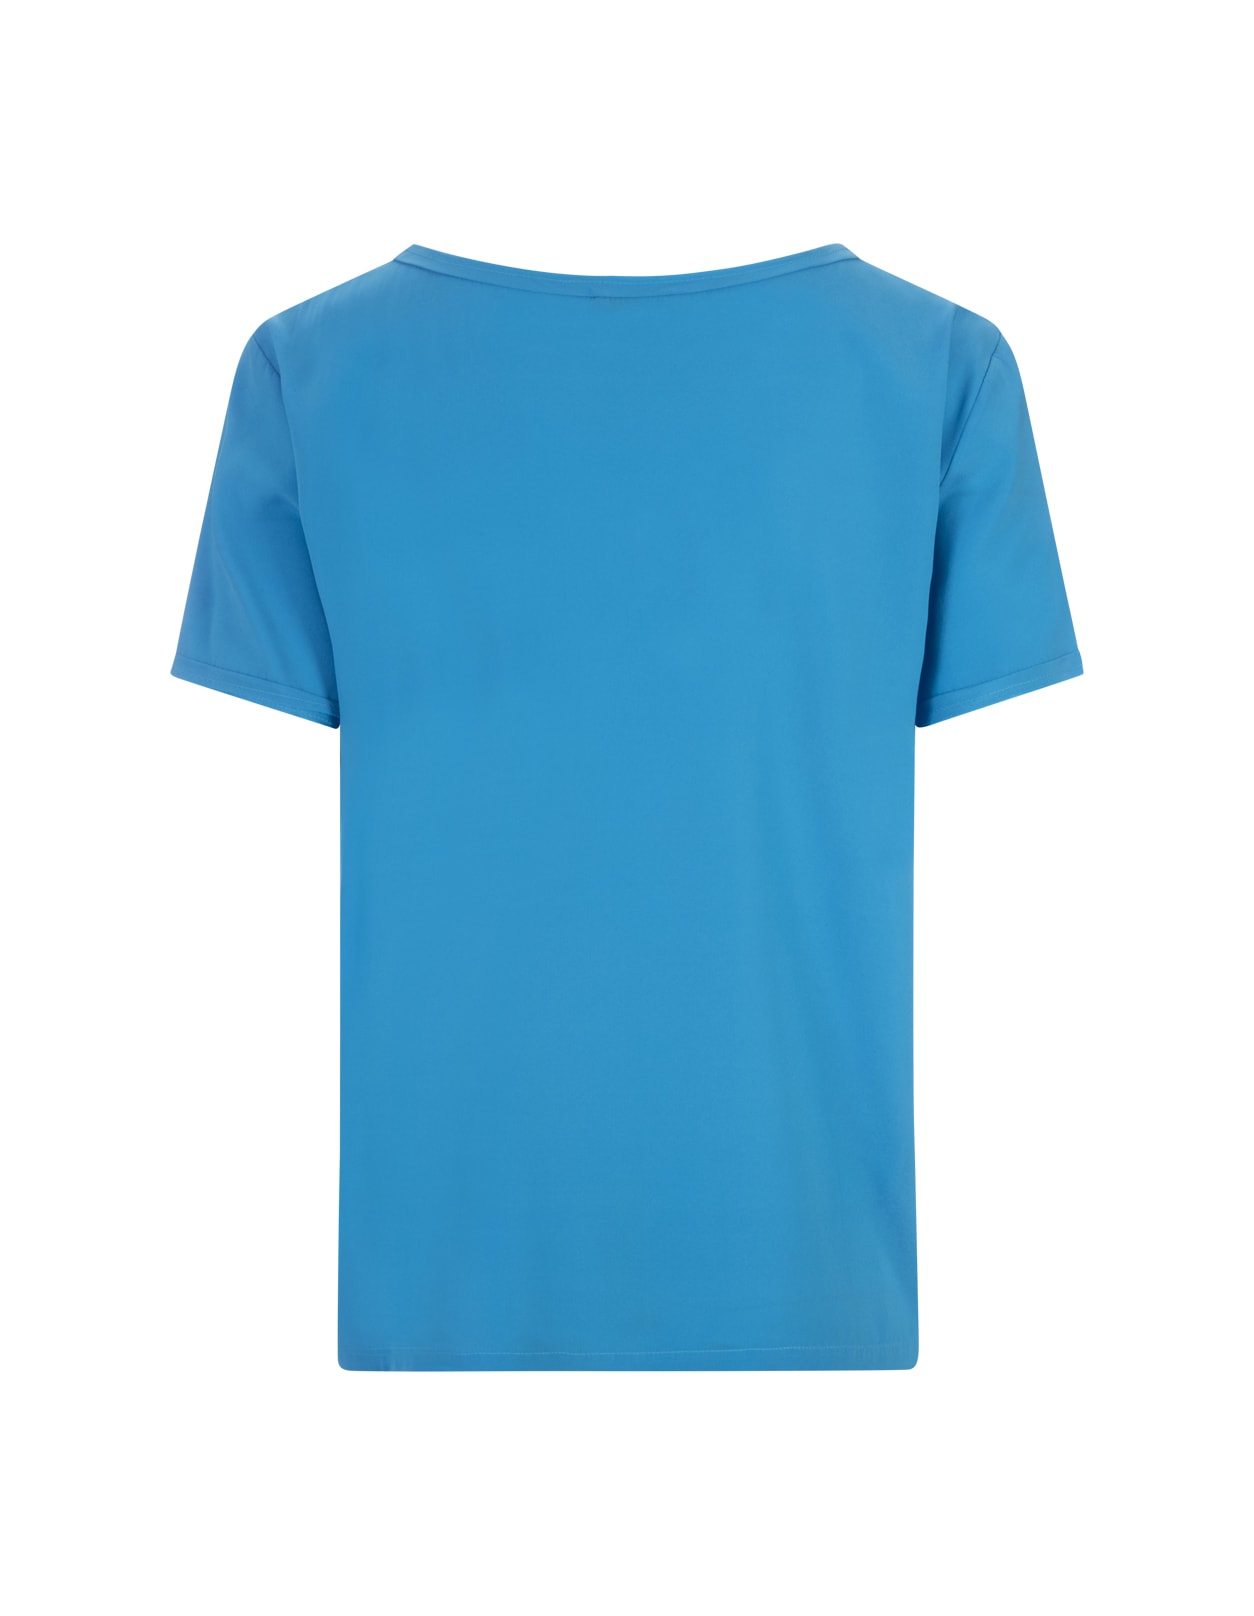 Shop Her Shirt Blue Opaque Silk T-shirt